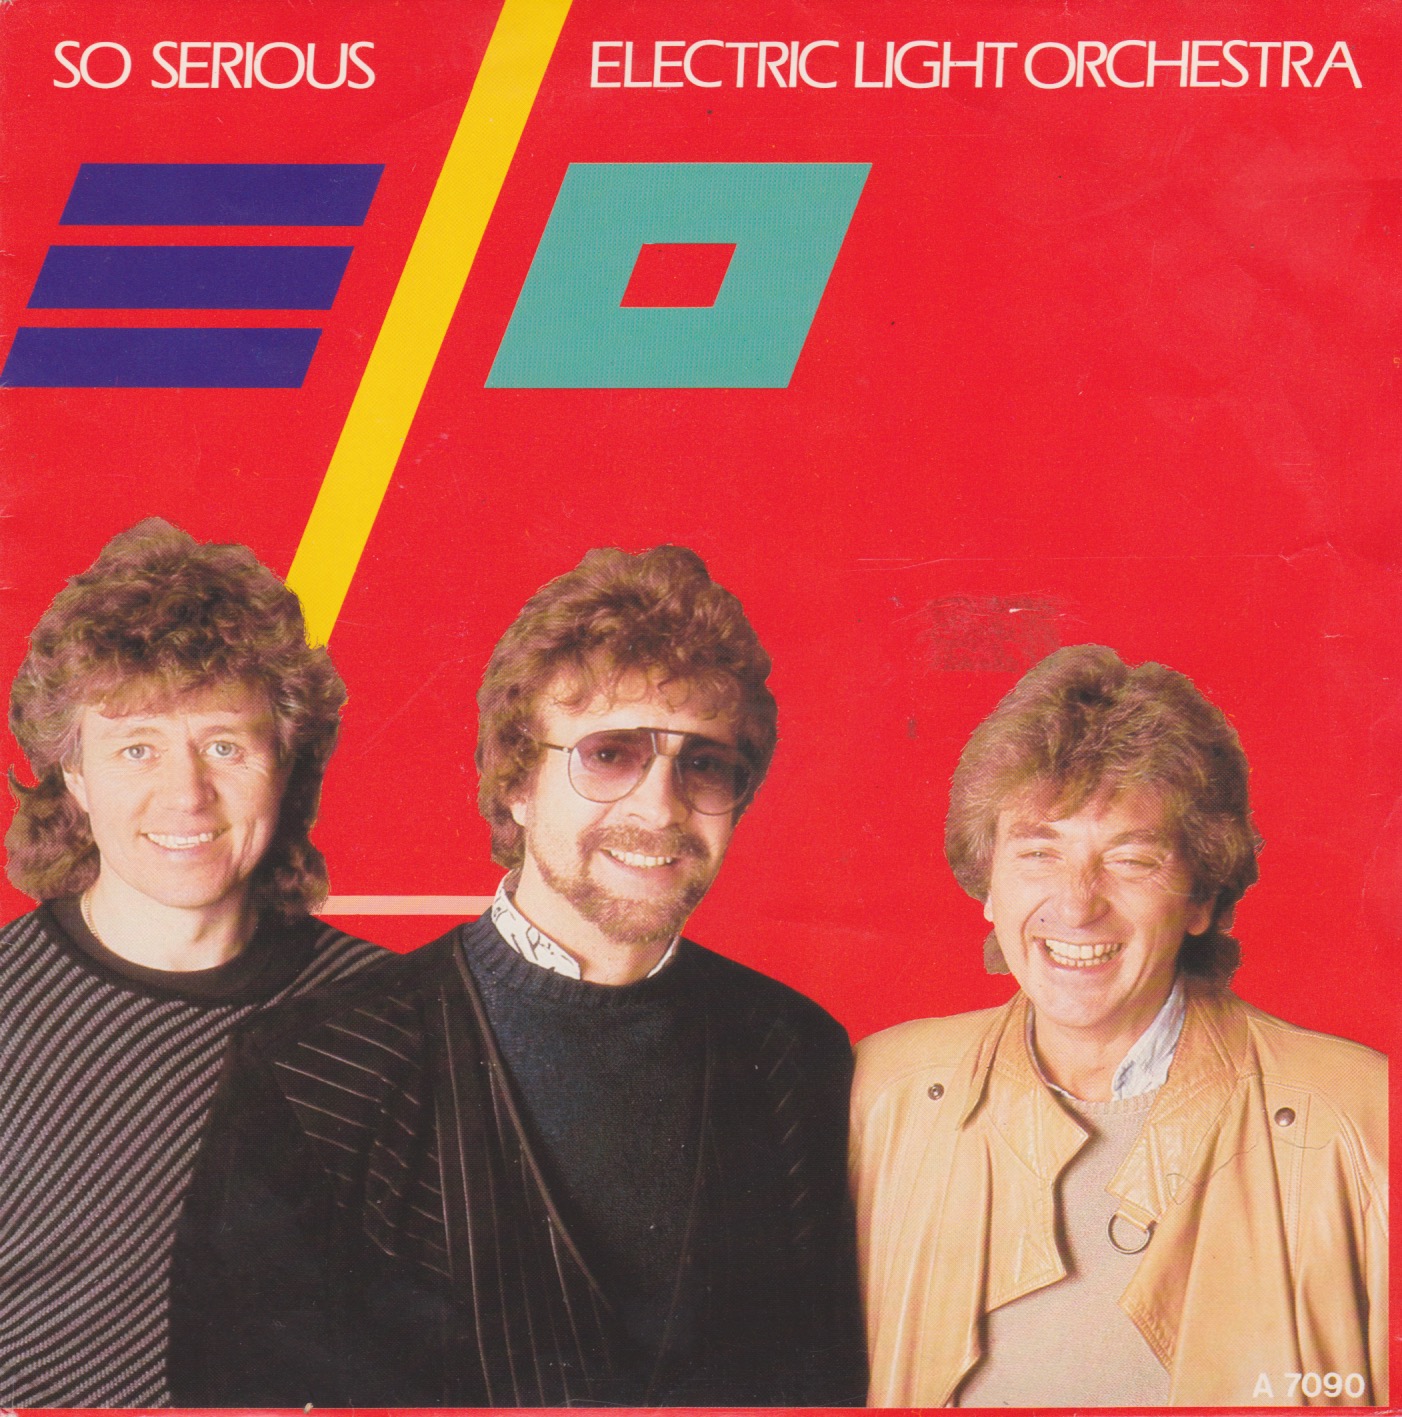 Электрический свет группа. Electric Light Orchestra Balance of Power 1986. Группа Electric Light Orchestra фотоальбомов. Electric Light Orchestra обложка. Balance of Power - группа.